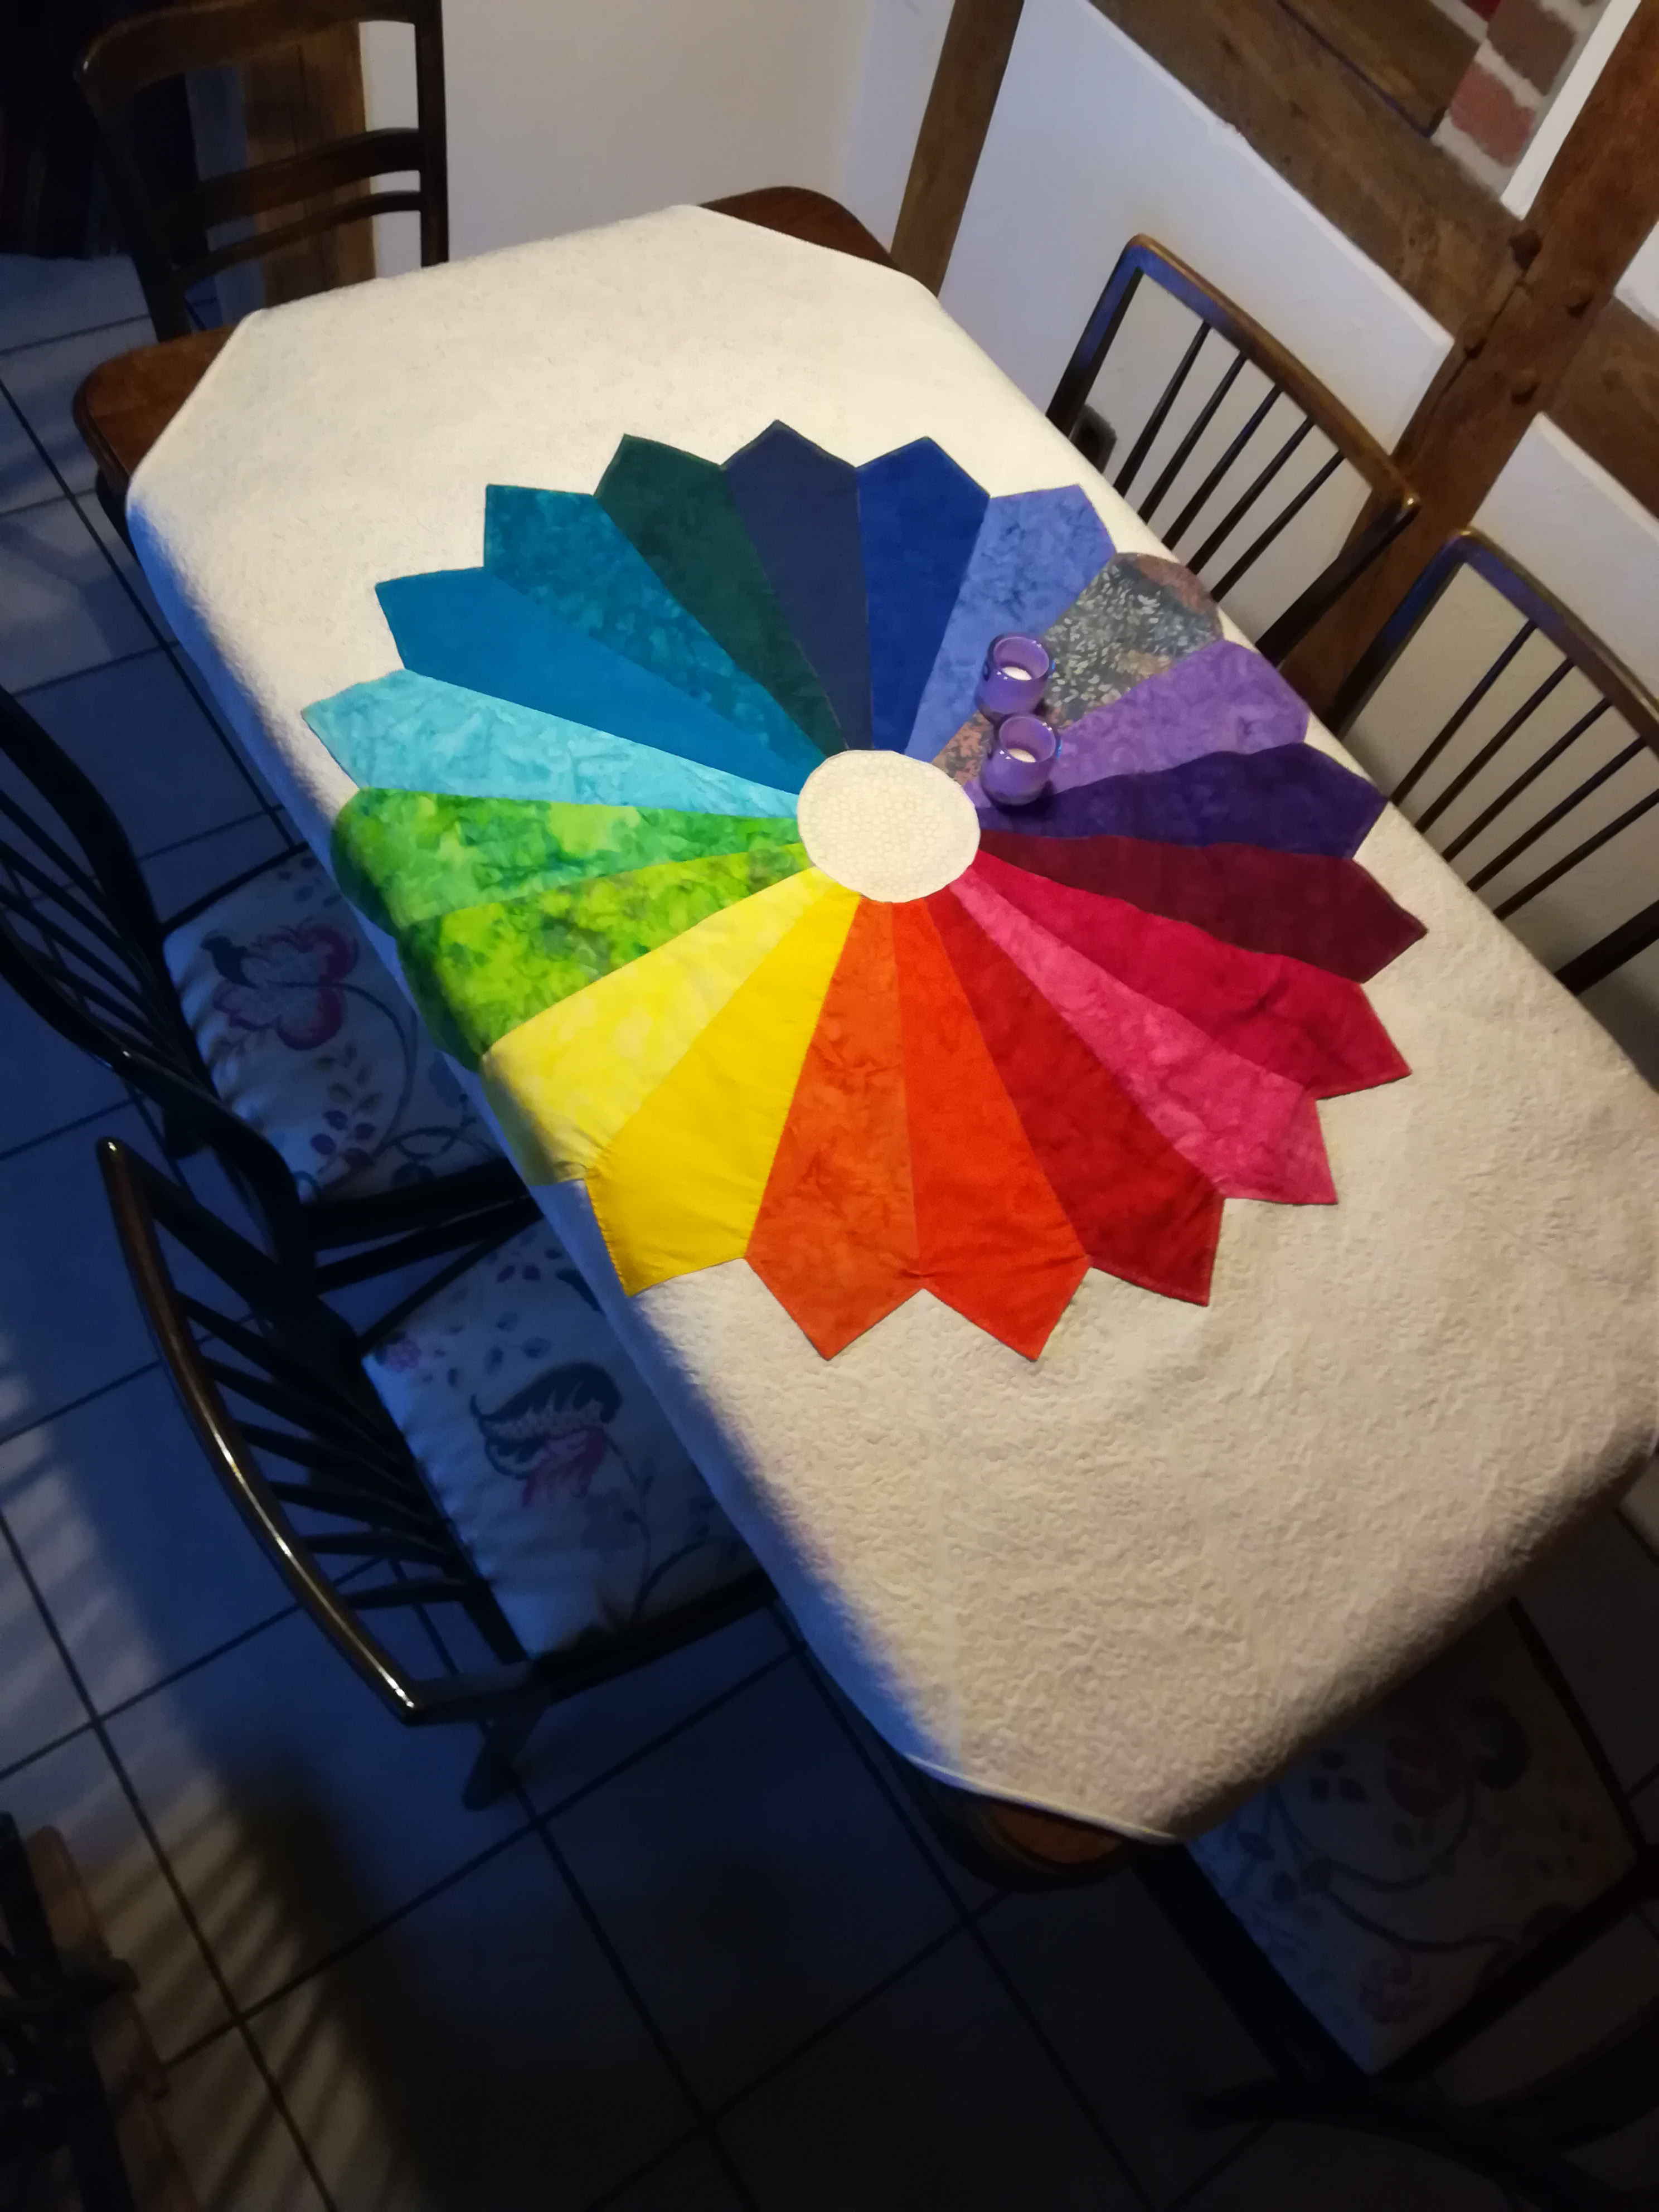 Rainbow Quilt